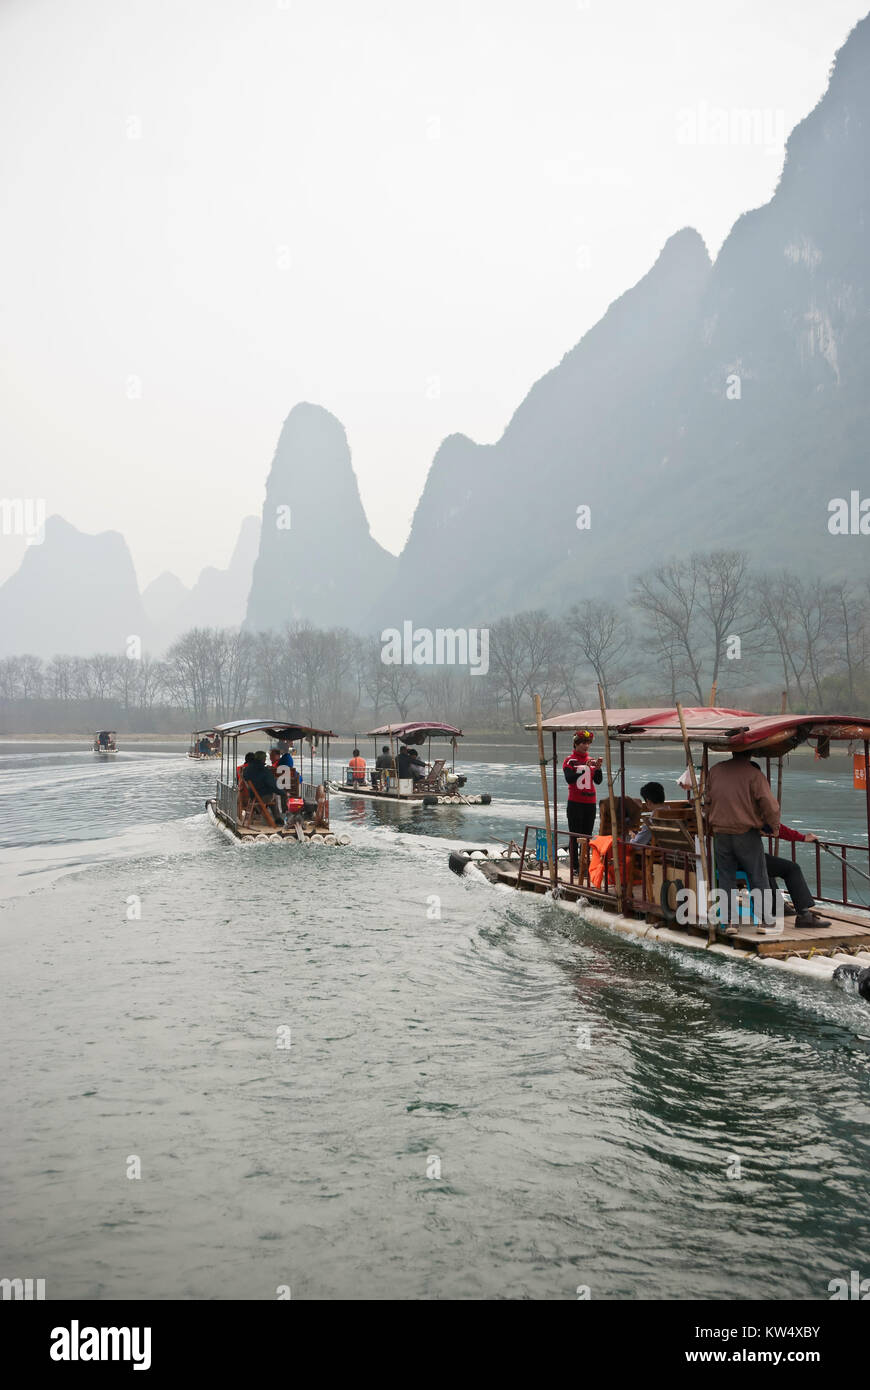 Bamboo Raft in Winter, Li River, Guilin, China  - The Li River or Lijiang is a river in Guangxi Zhuang Autonomous Region, China. Stock Photo